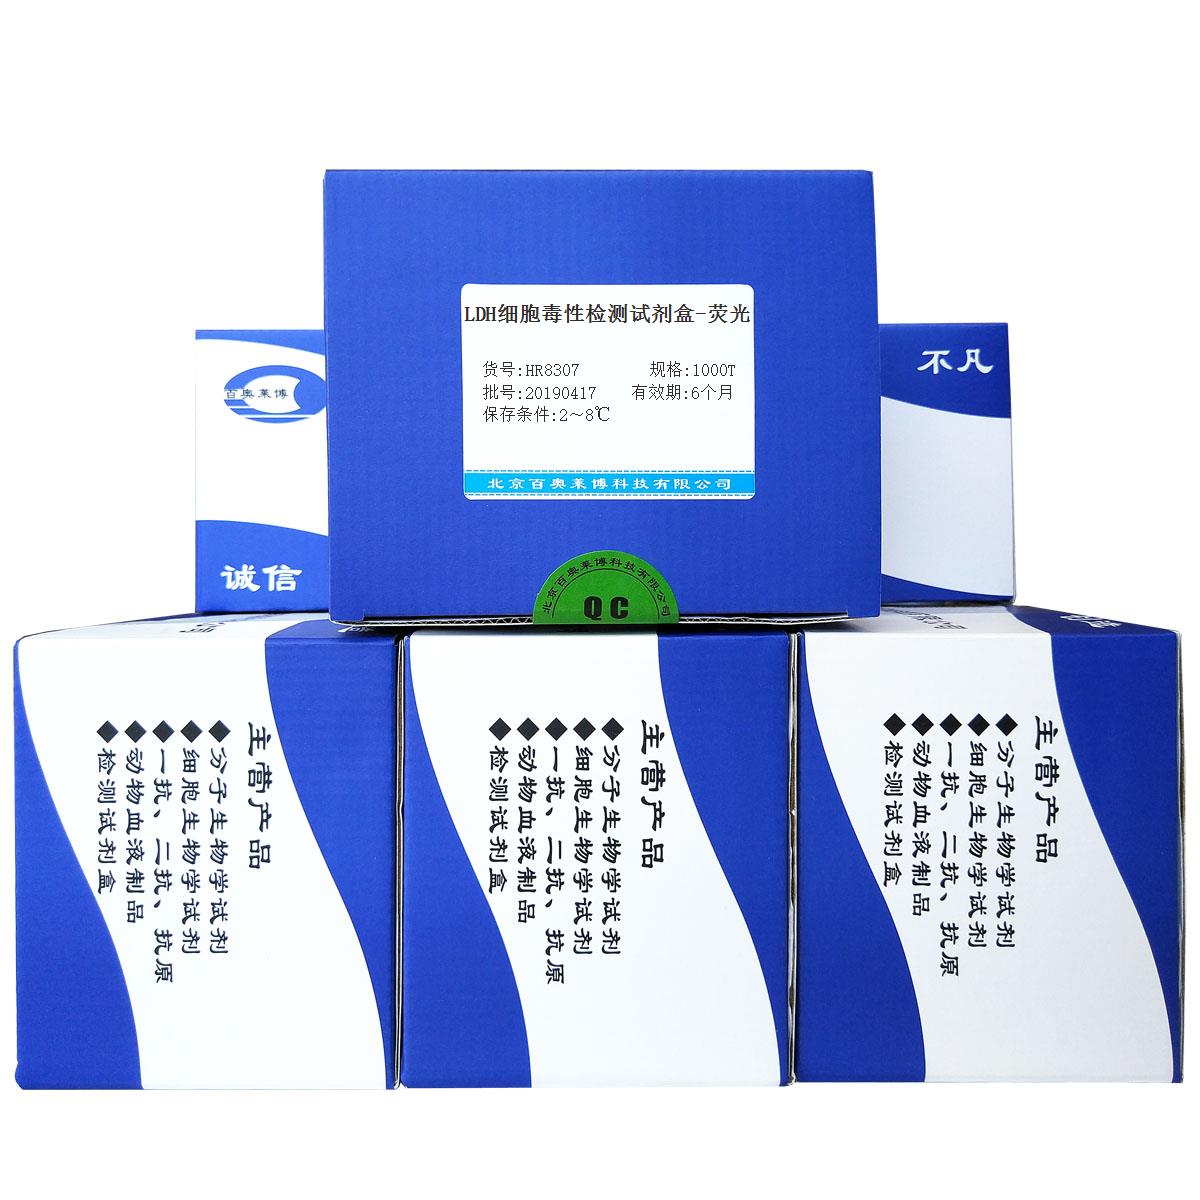 LDH细胞毒性检测试剂盒-荧光北京厂家